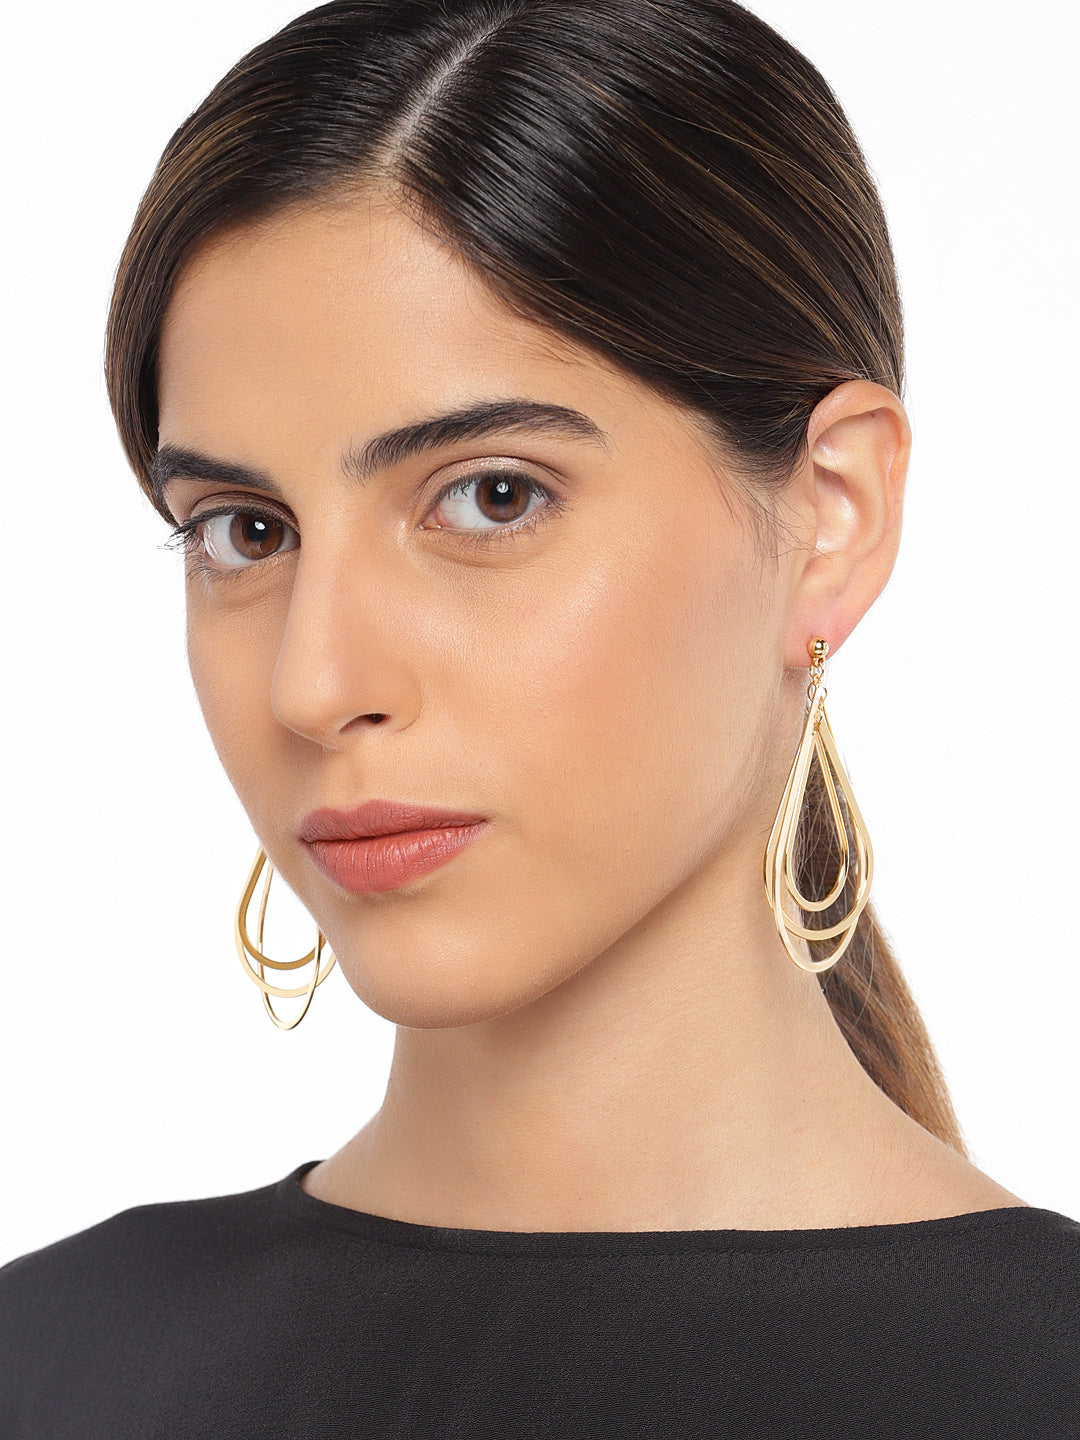 Peardrop Gold Earrings - ChicMela